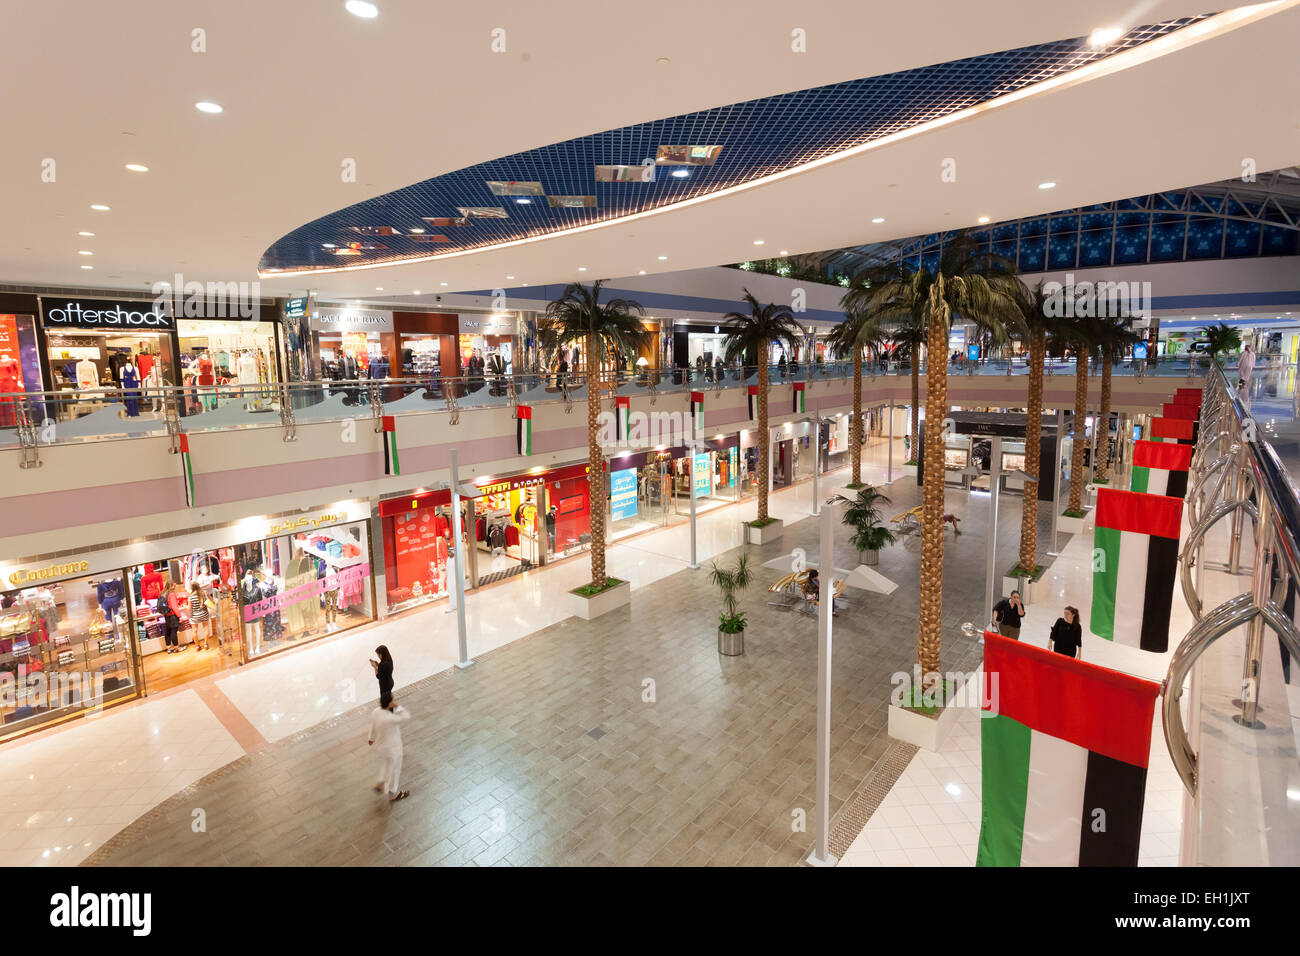 Innenraum der Marina Mall in Abu Dhabi. 21. Dezember 2014 in Abu Dhabi, Vereinigte Arabische Emirate Stockfoto